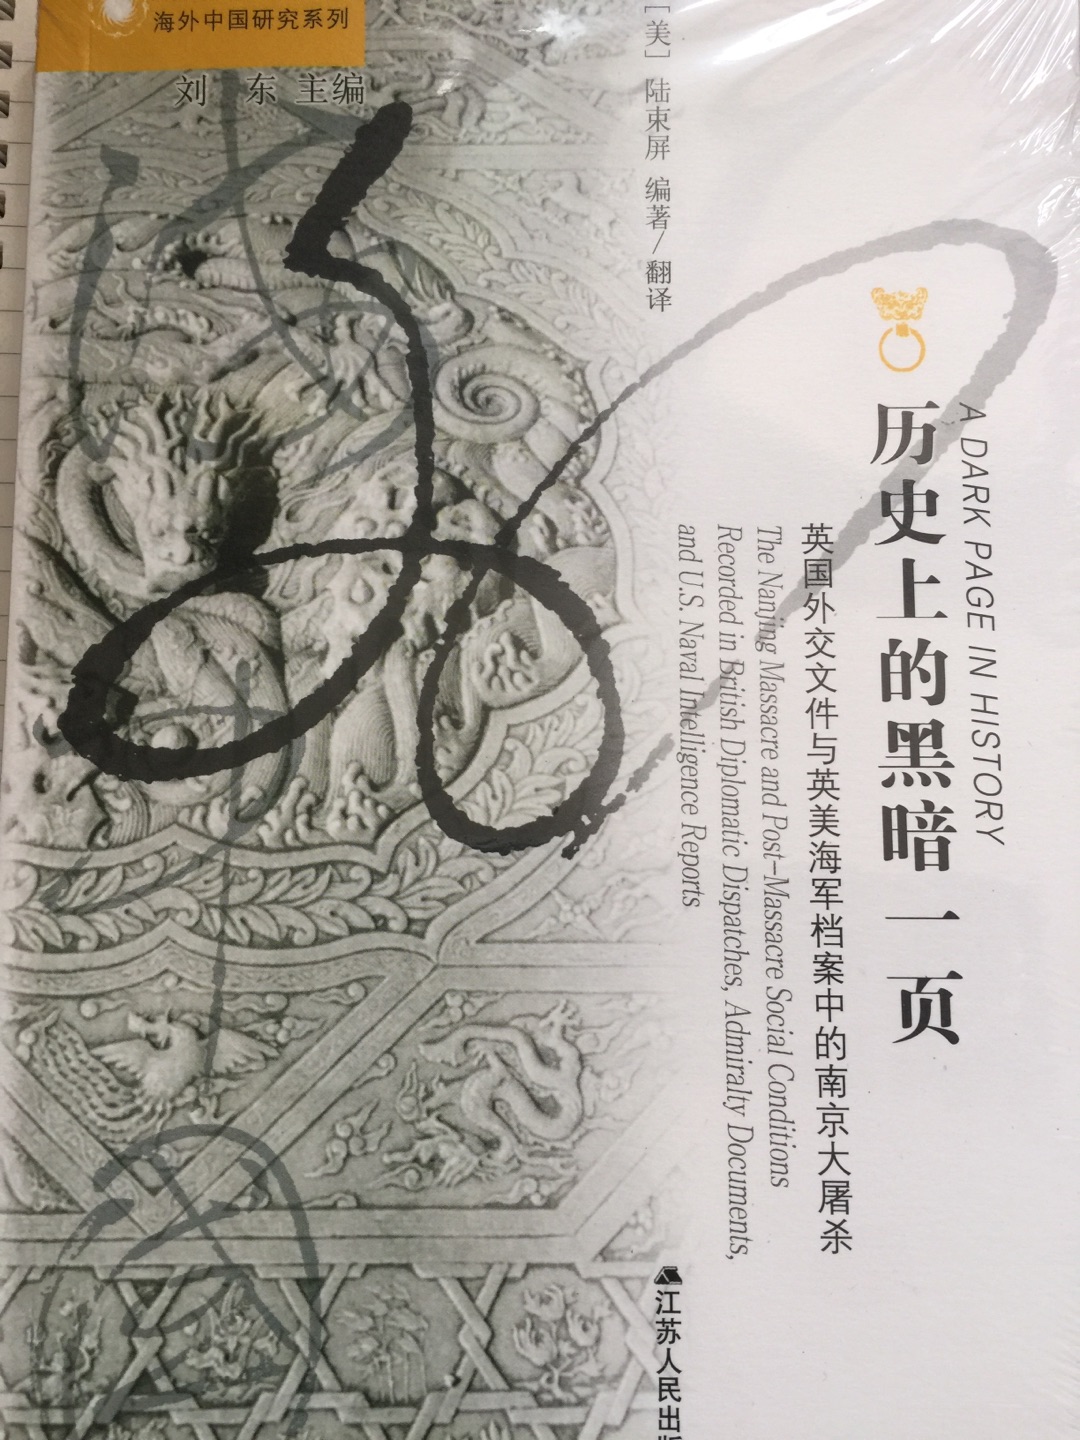 很沉重的书，关于南京大屠杀入手的第二本，搭配甲骨文的《南京1937》一起阅读。两套书都是心头好。